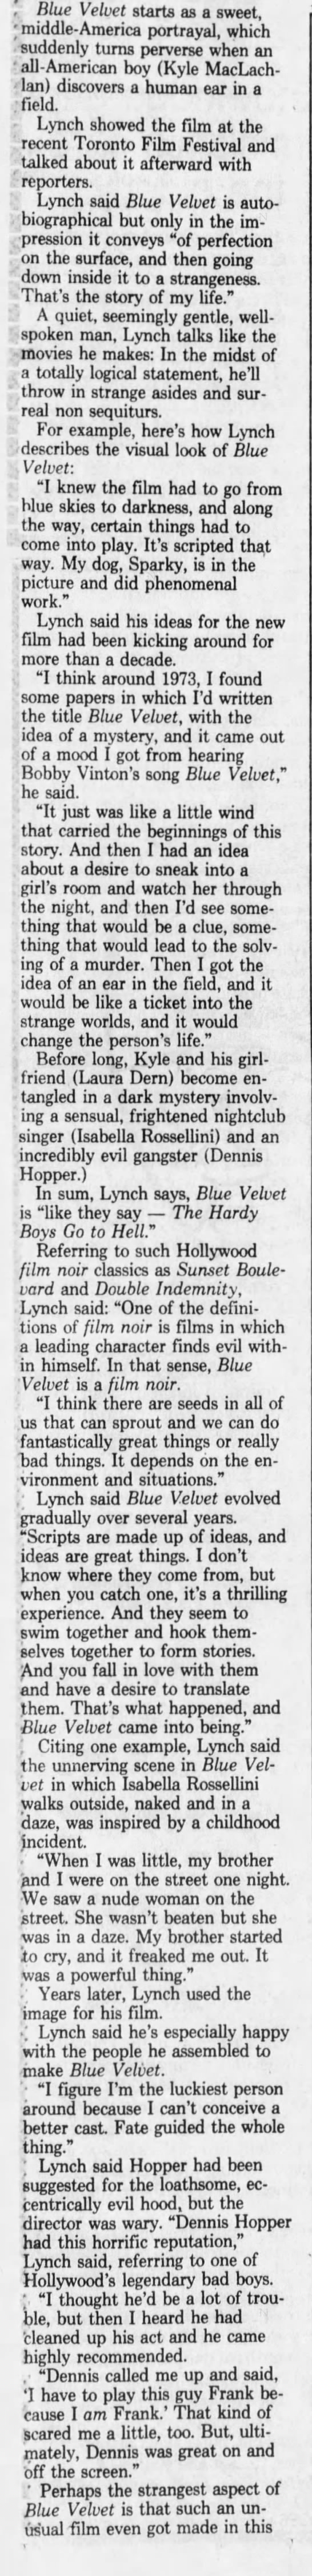 Lynch’s inspiration for Blue Velvet - 